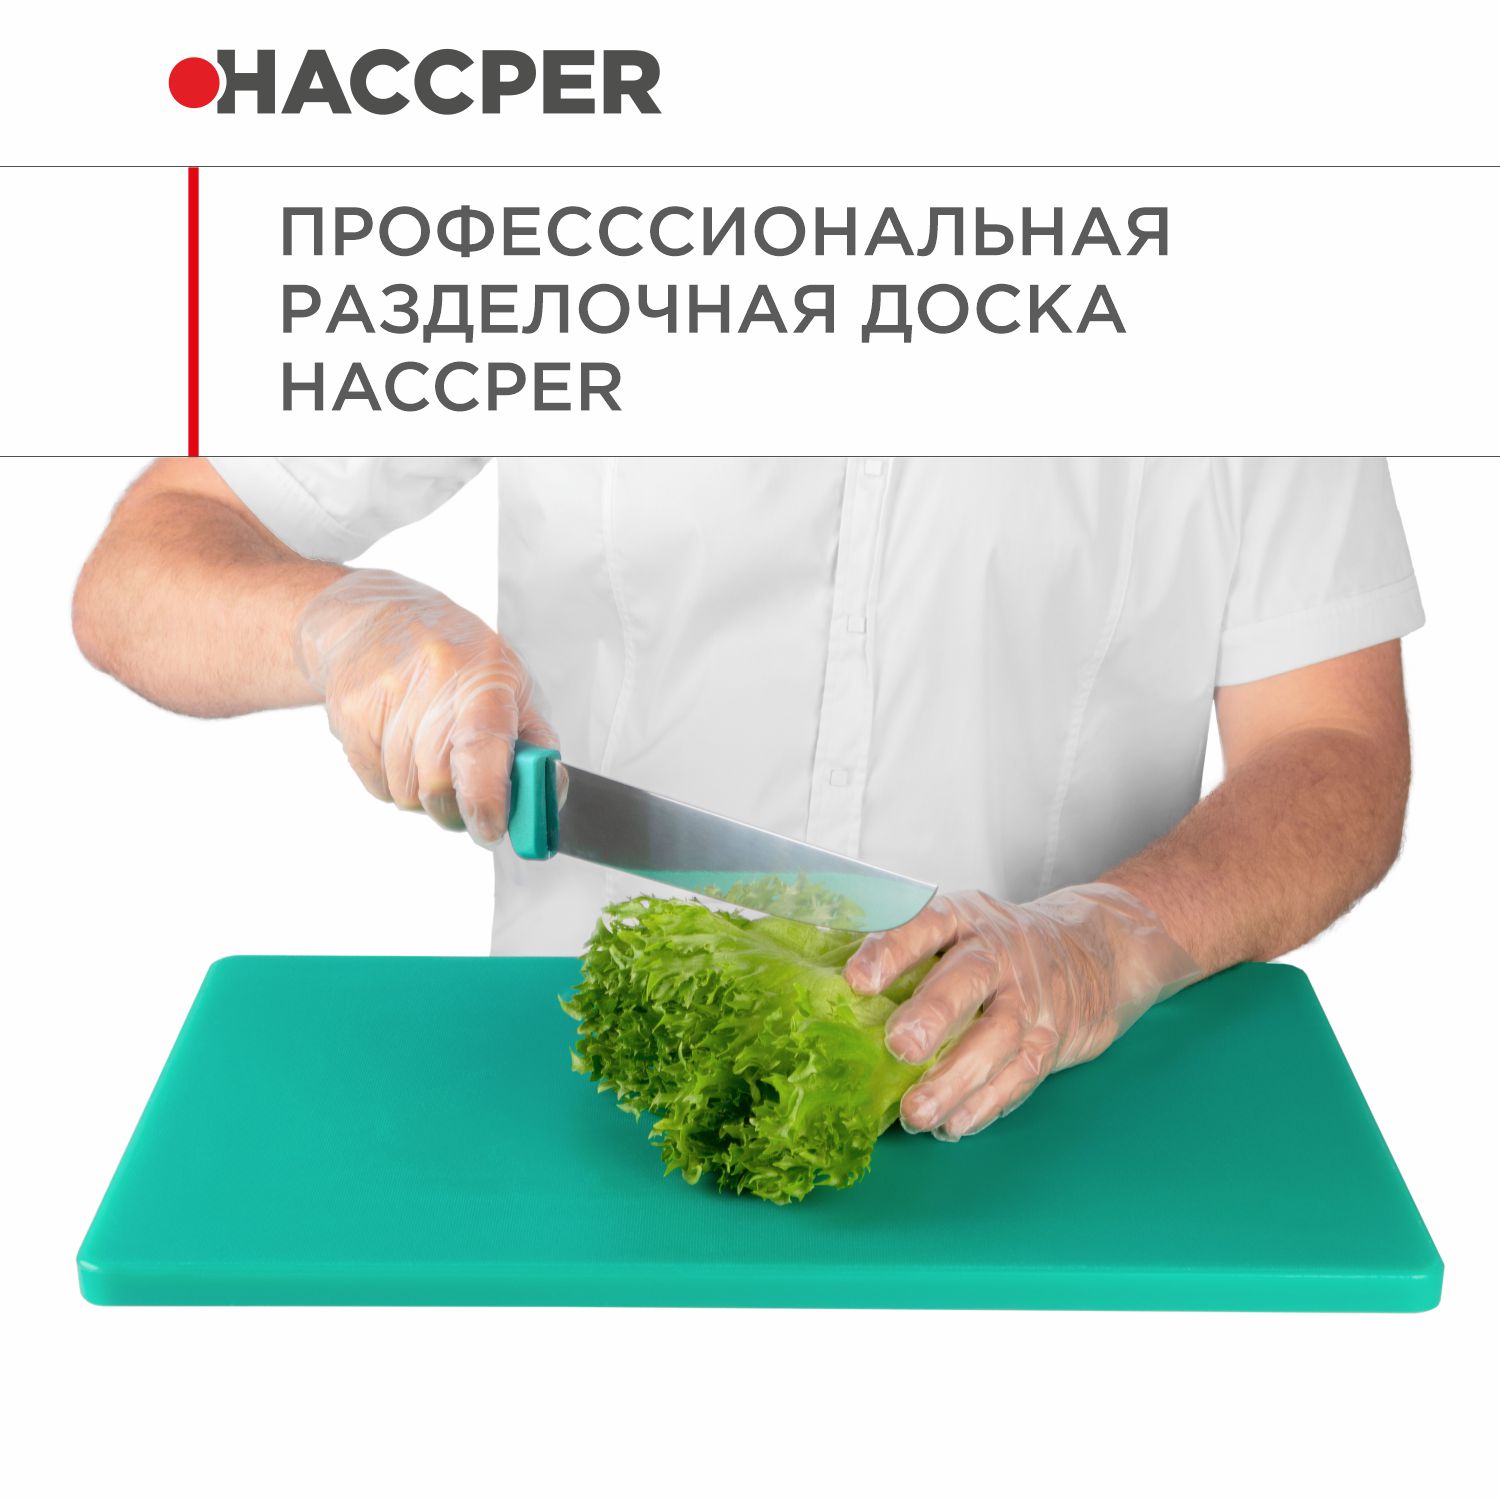 Профессиональная разделочная доска  HACCPER Gastra, зеленая